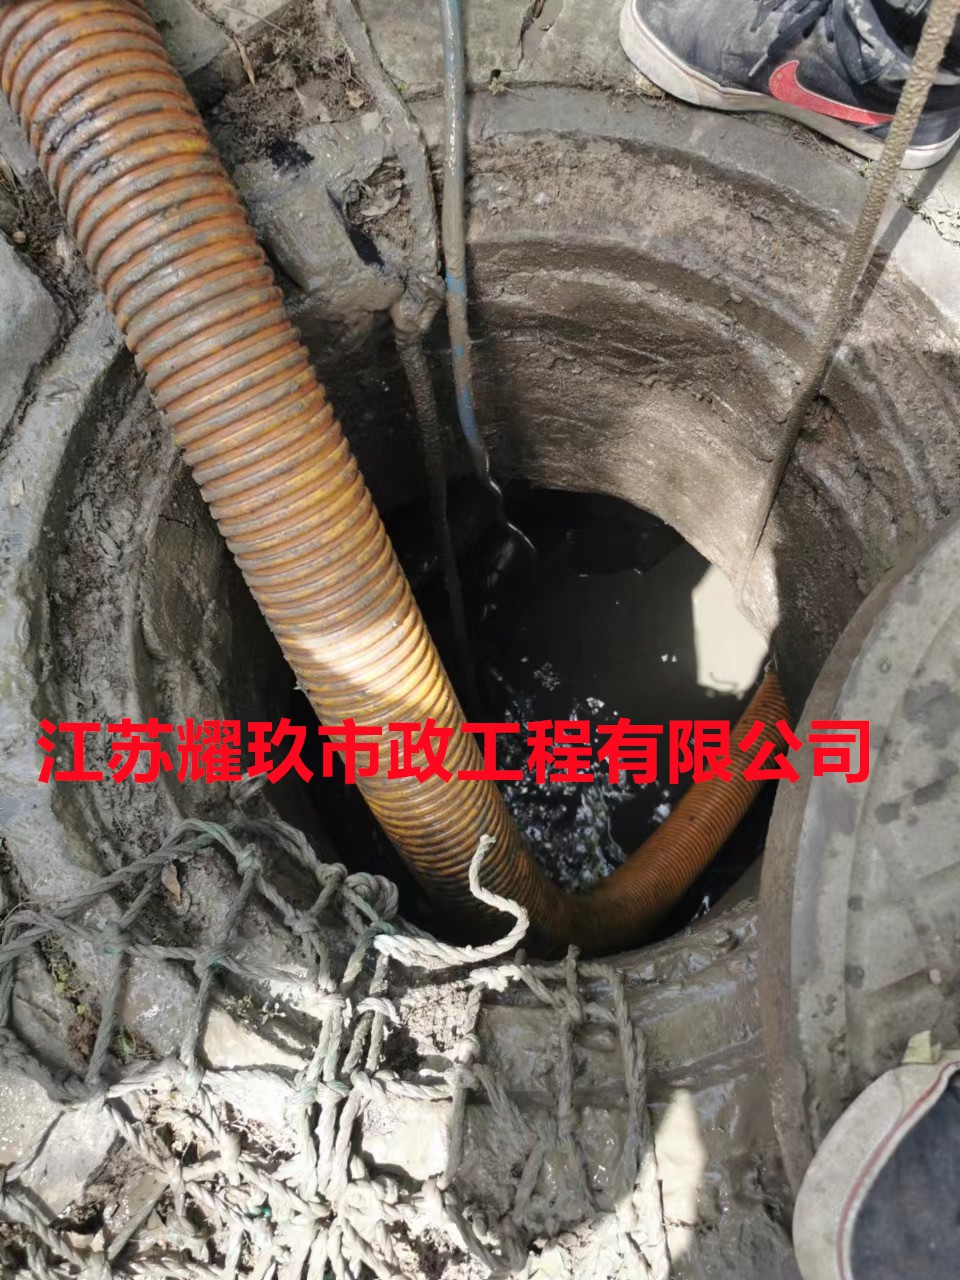 安徽省蚌埠市市政排水管道清淤